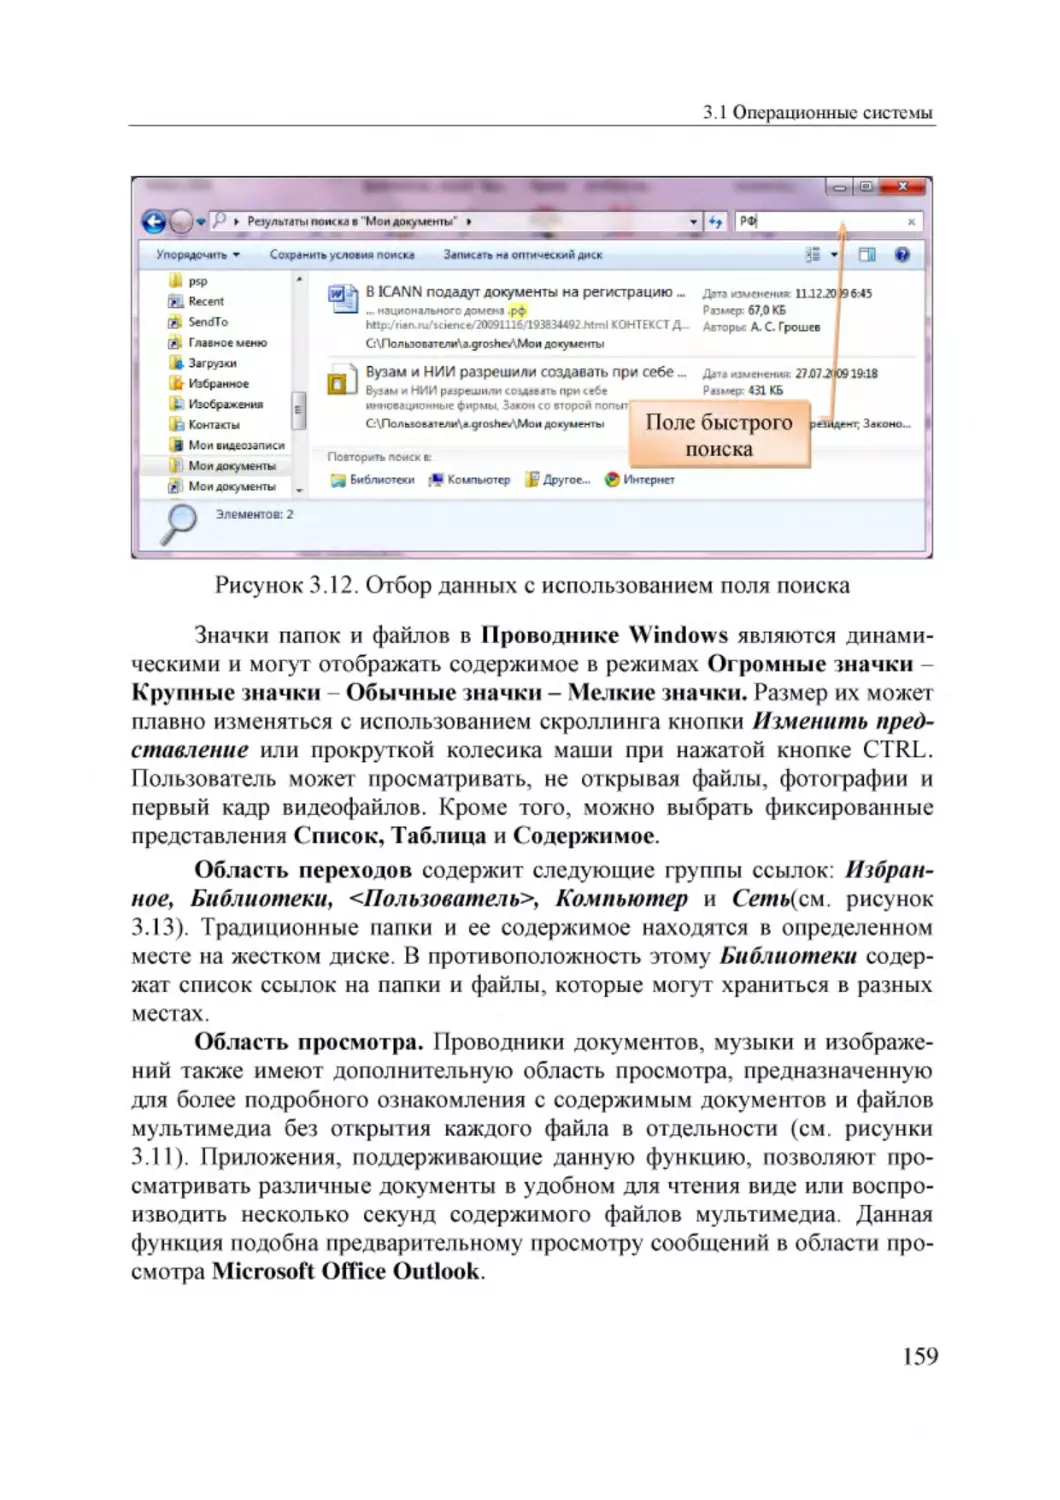 Informatika_Uchebnik_dlya_vuzov_2010 159